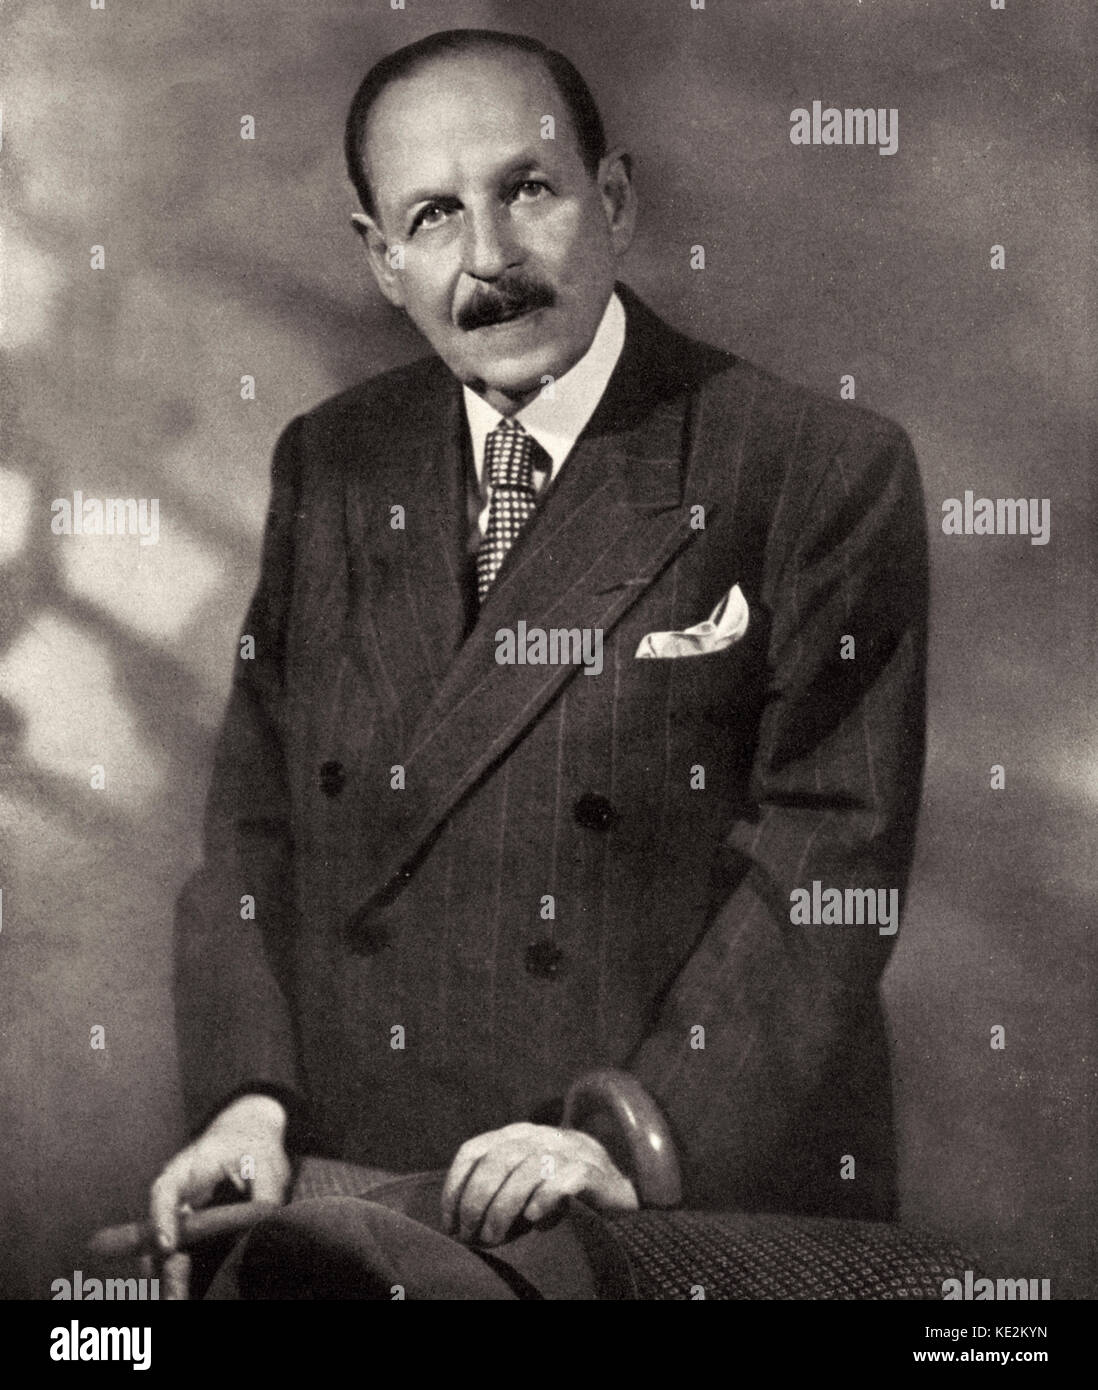 Emmerich Kalman. Porträt des ungarischen Komponisten. Für seine Operetten 24 Oktober 1882 - 30 Oktober 1953 bekannt Stockfoto